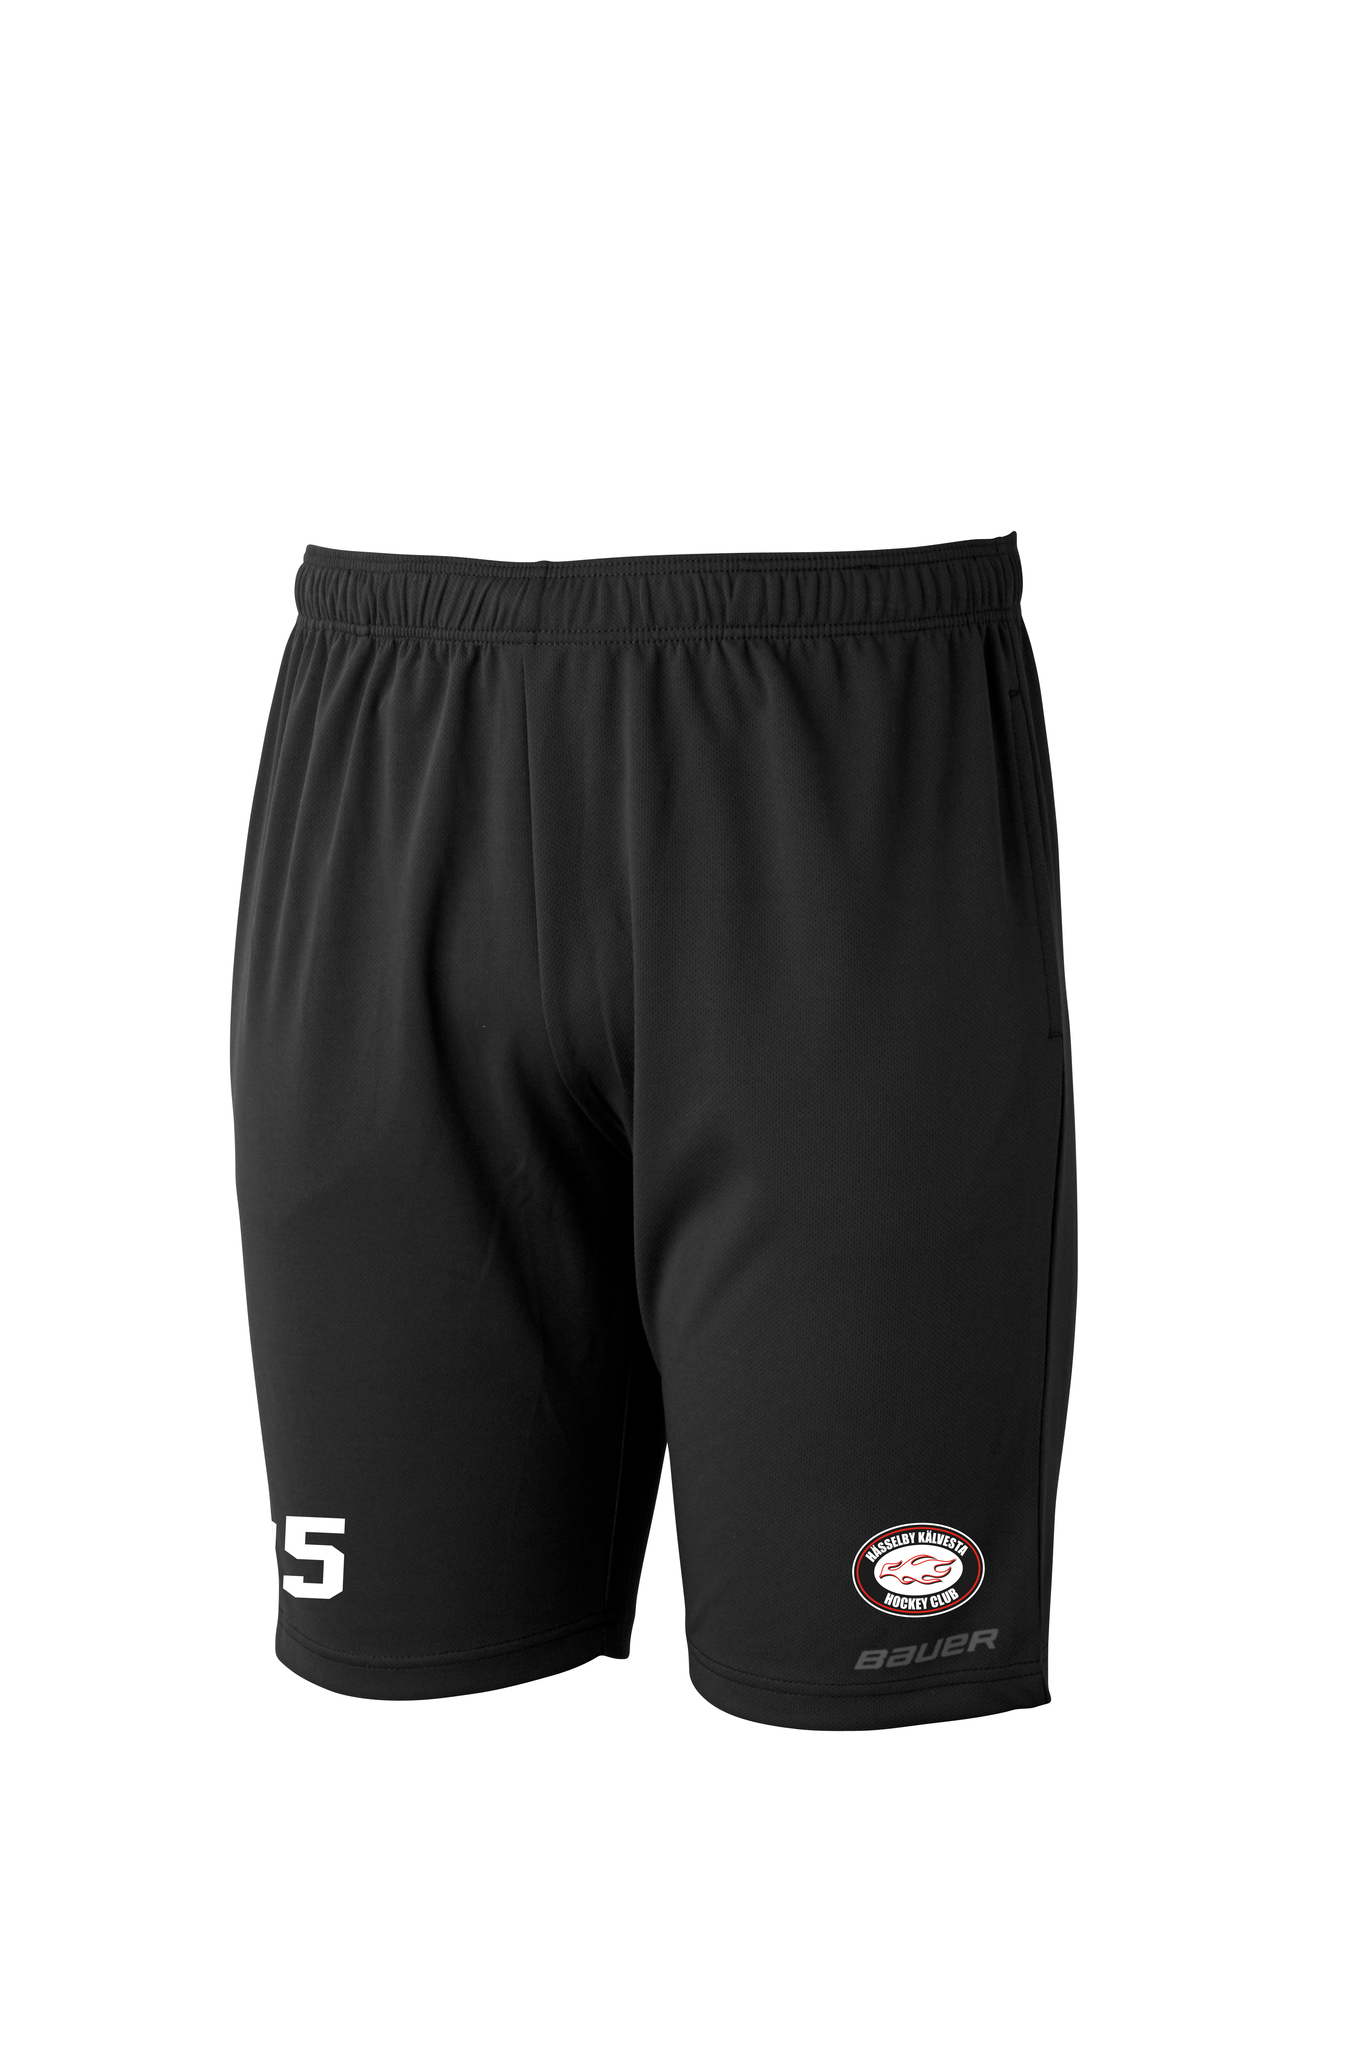 Bauer core athletic shorts Jr, HKHC